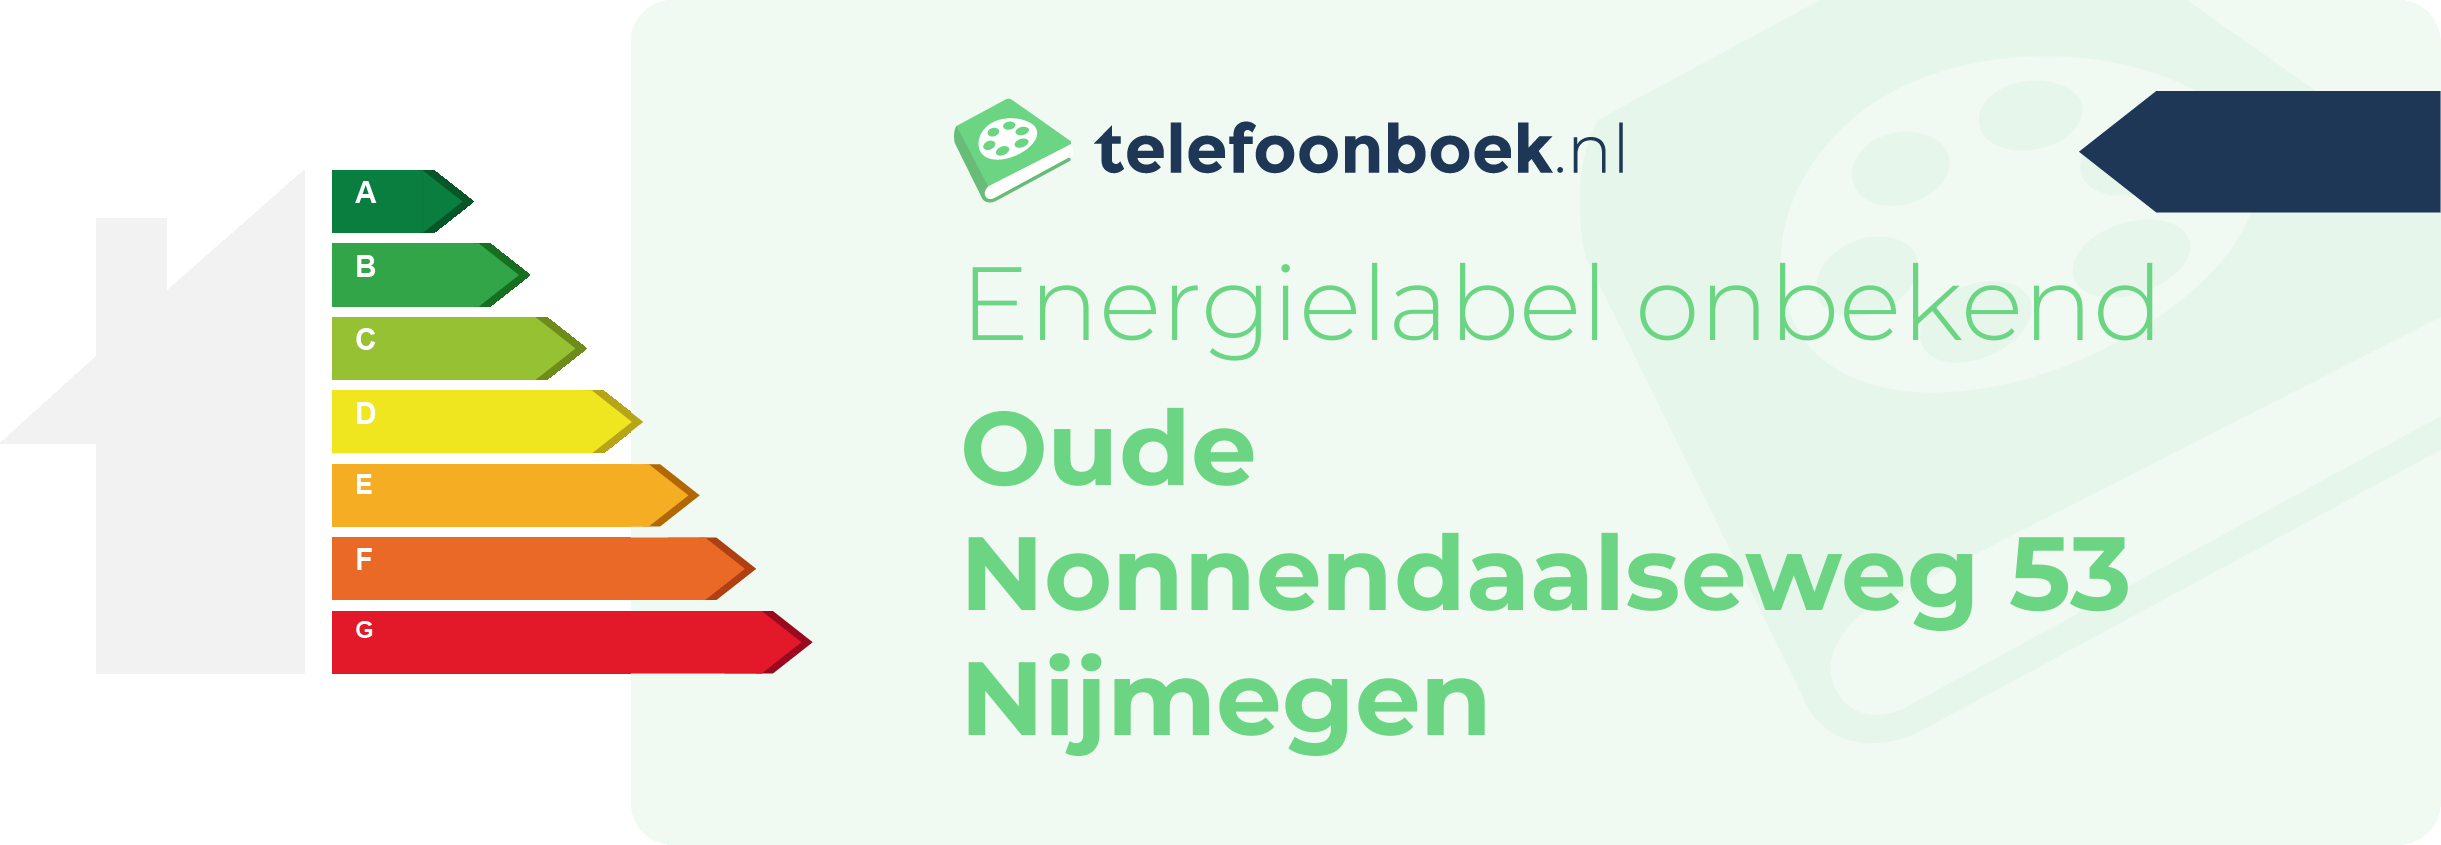 Energielabel Oude Nonnendaalseweg 53 Nijmegen